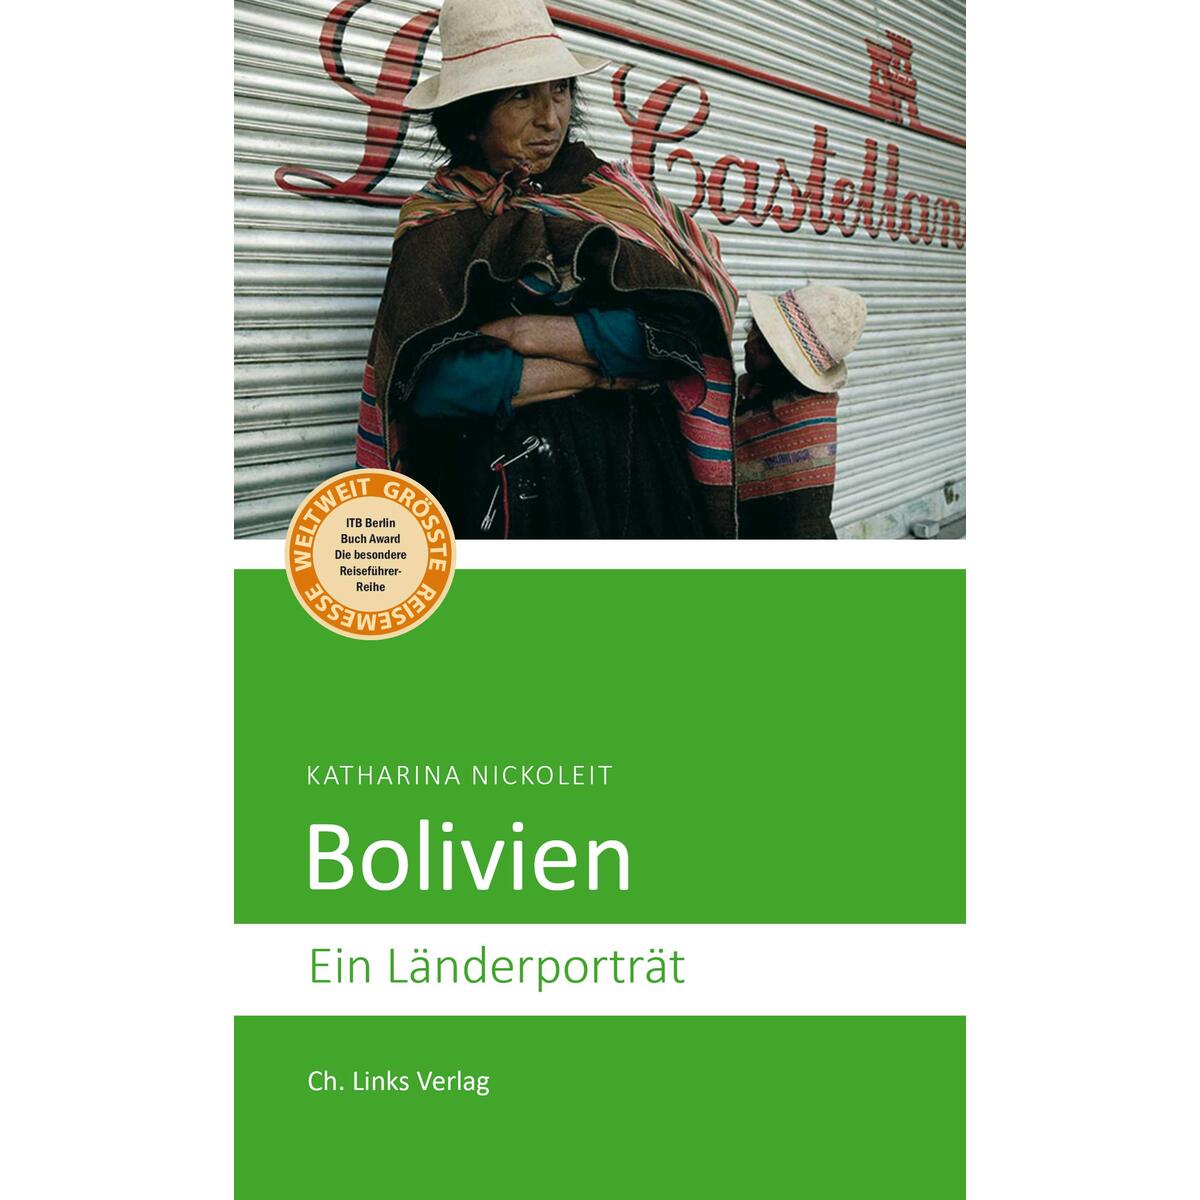 Bolivien von Christoph Links Verlag